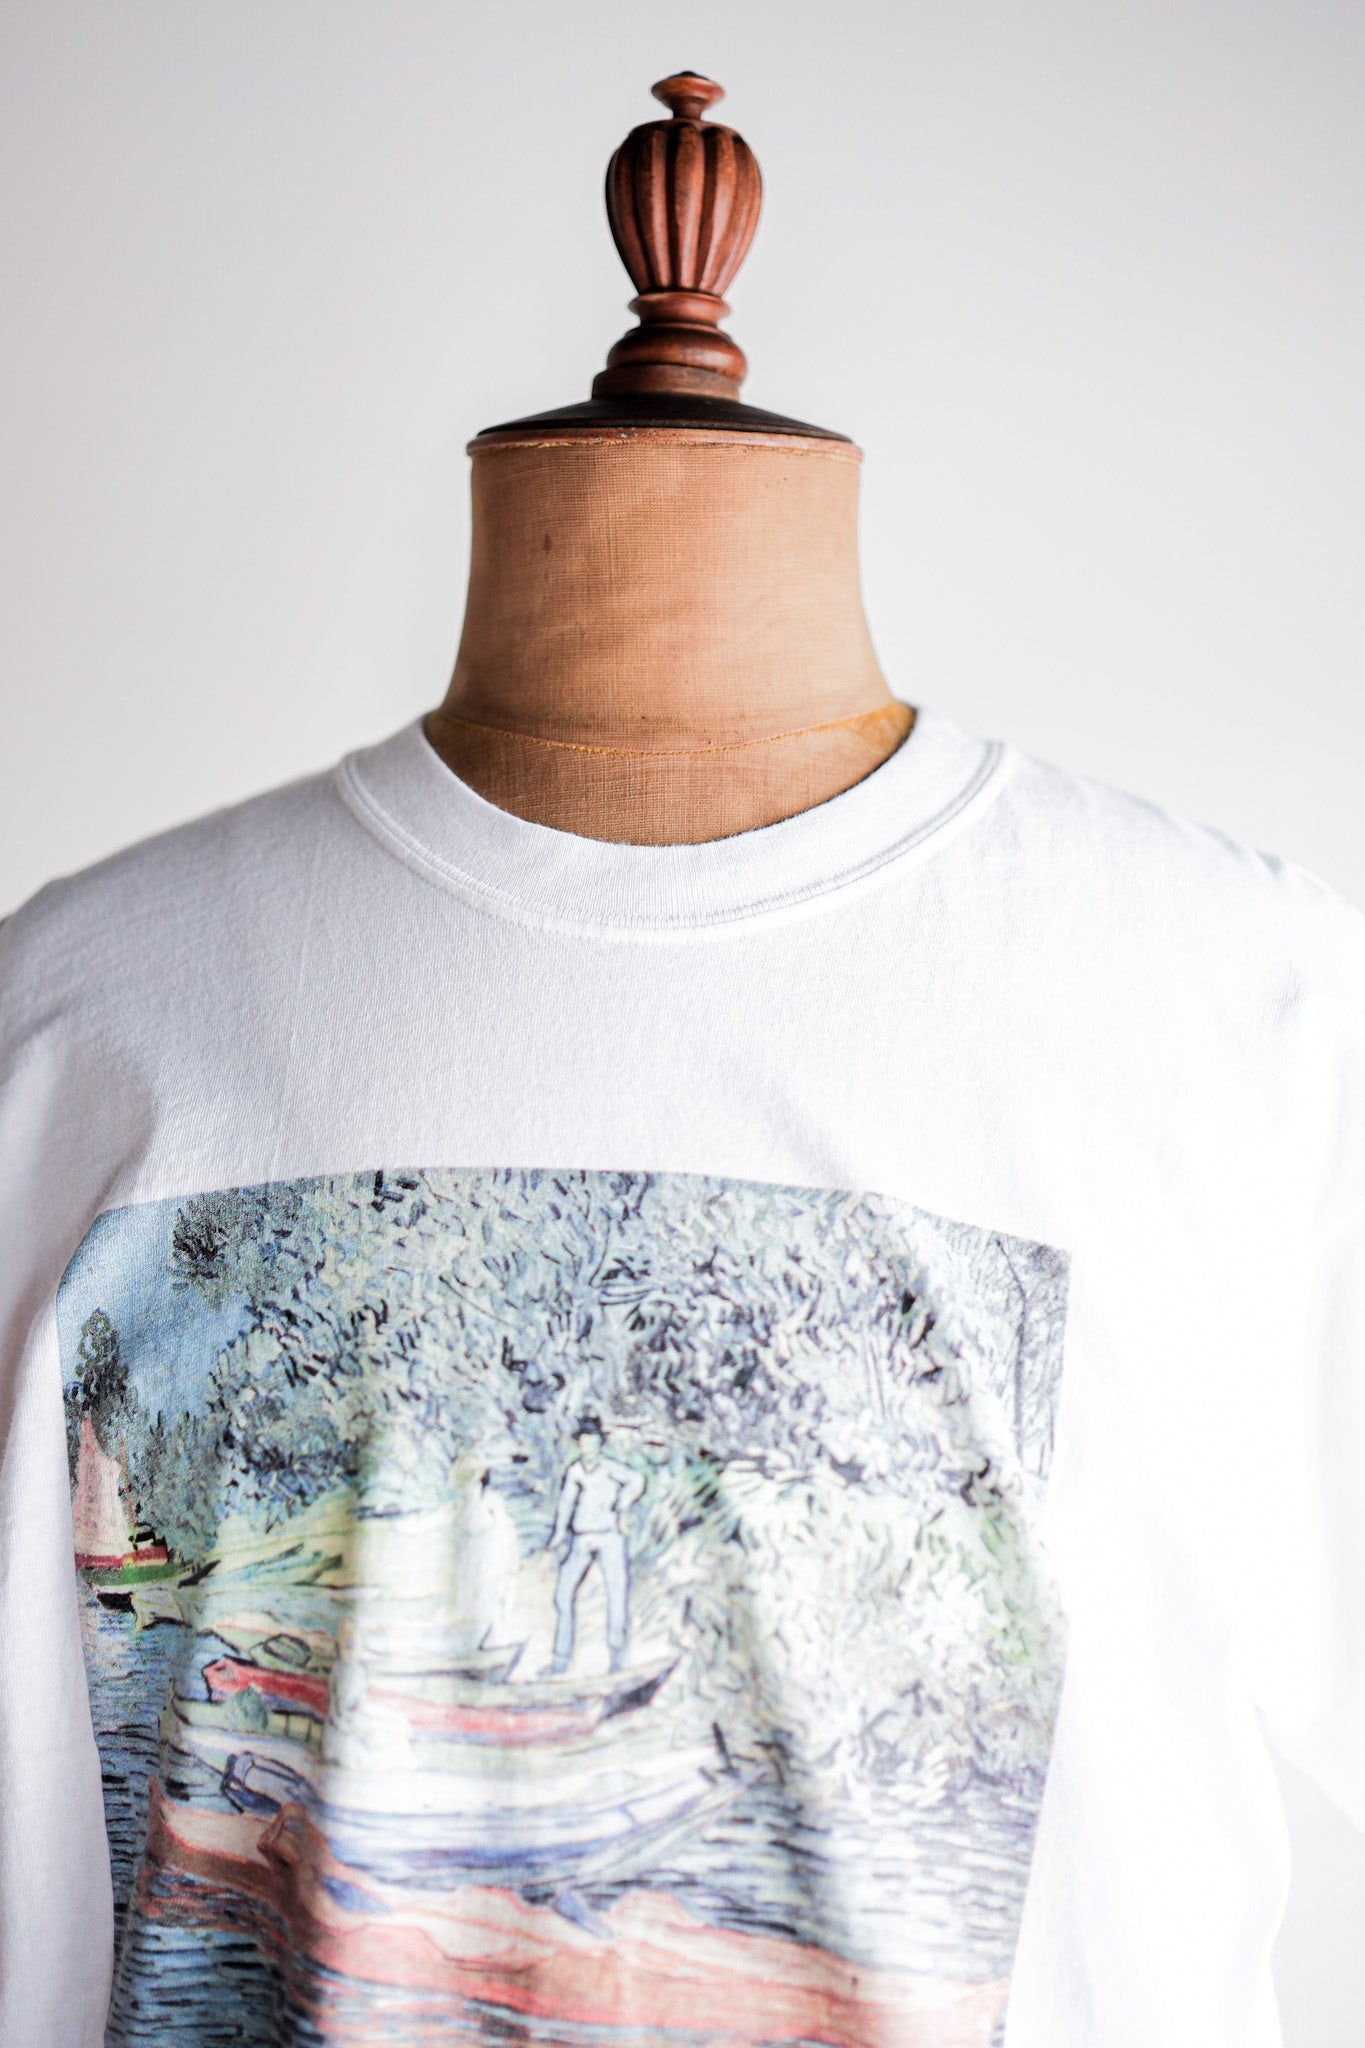 [~ 00's] เสื้อยืดพิมพ์ศิลปะวินเทจขนาดเสื้อยืด "Bank of the Oise ที่ Auvers" ของ Vincent Van Gosh "